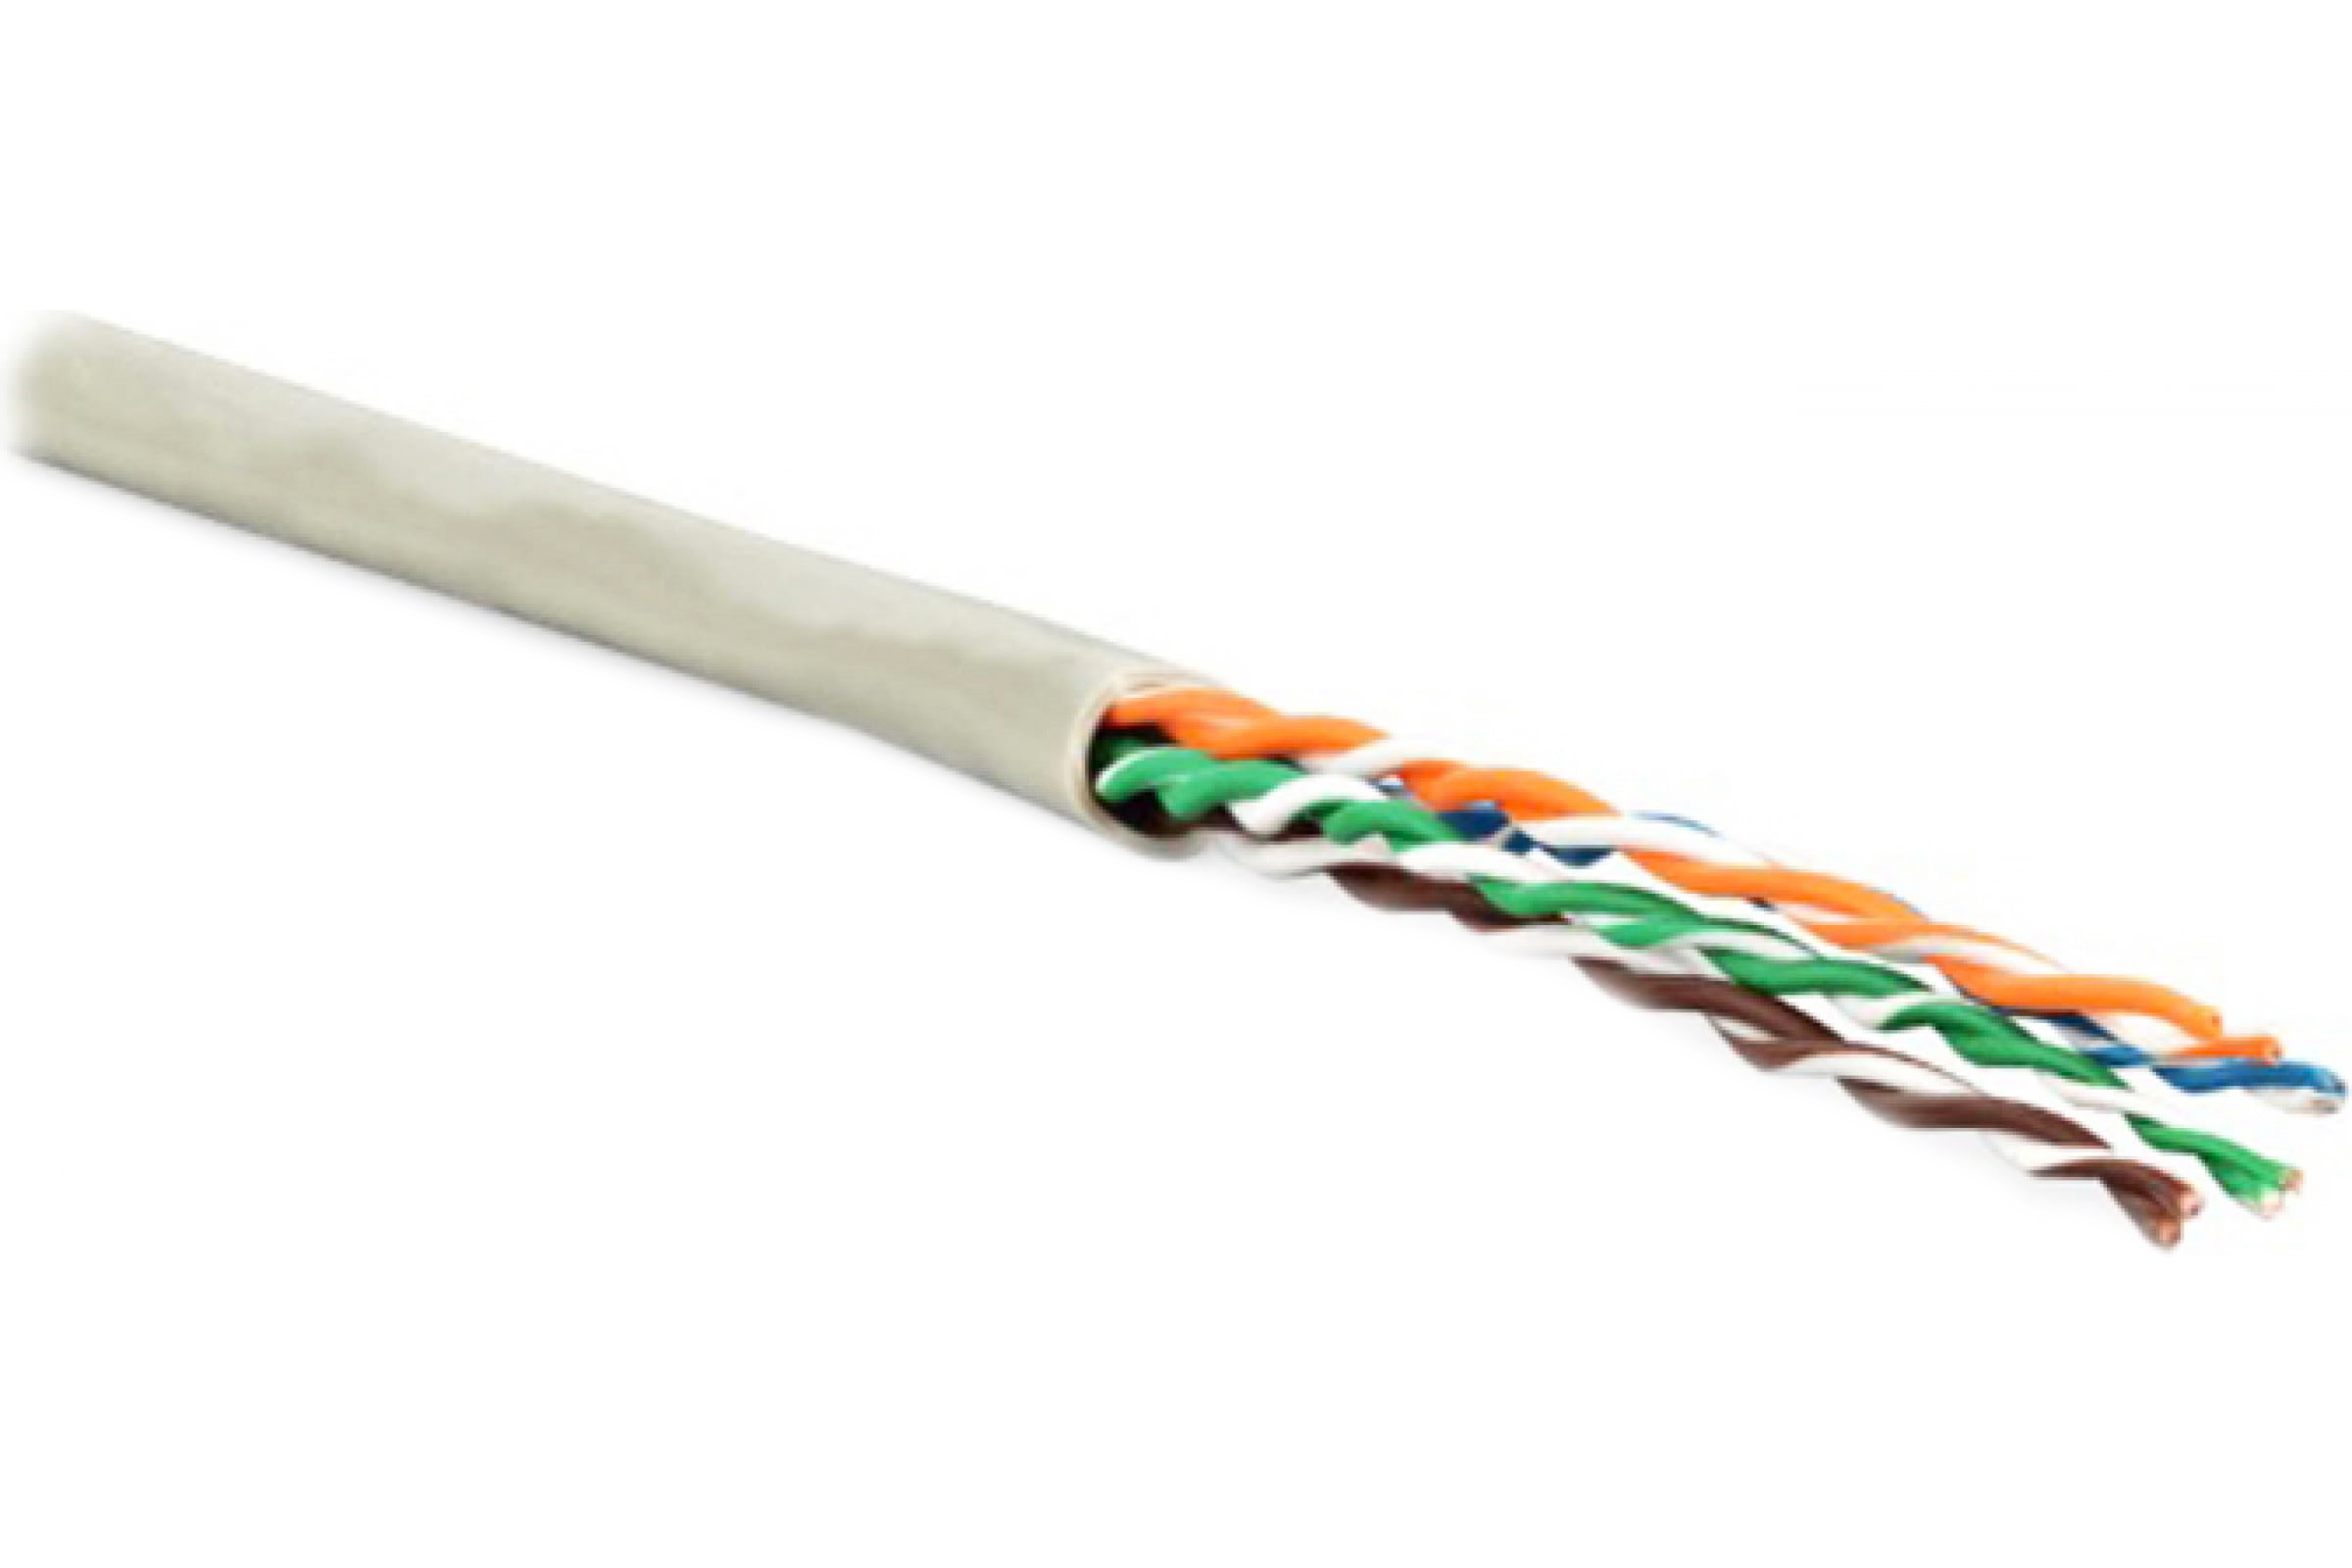 Кабель Hyperline кабель сетевой без разъемов 100м (243616) кабель hyperline кабель сетевой без разъемов 500м 49110